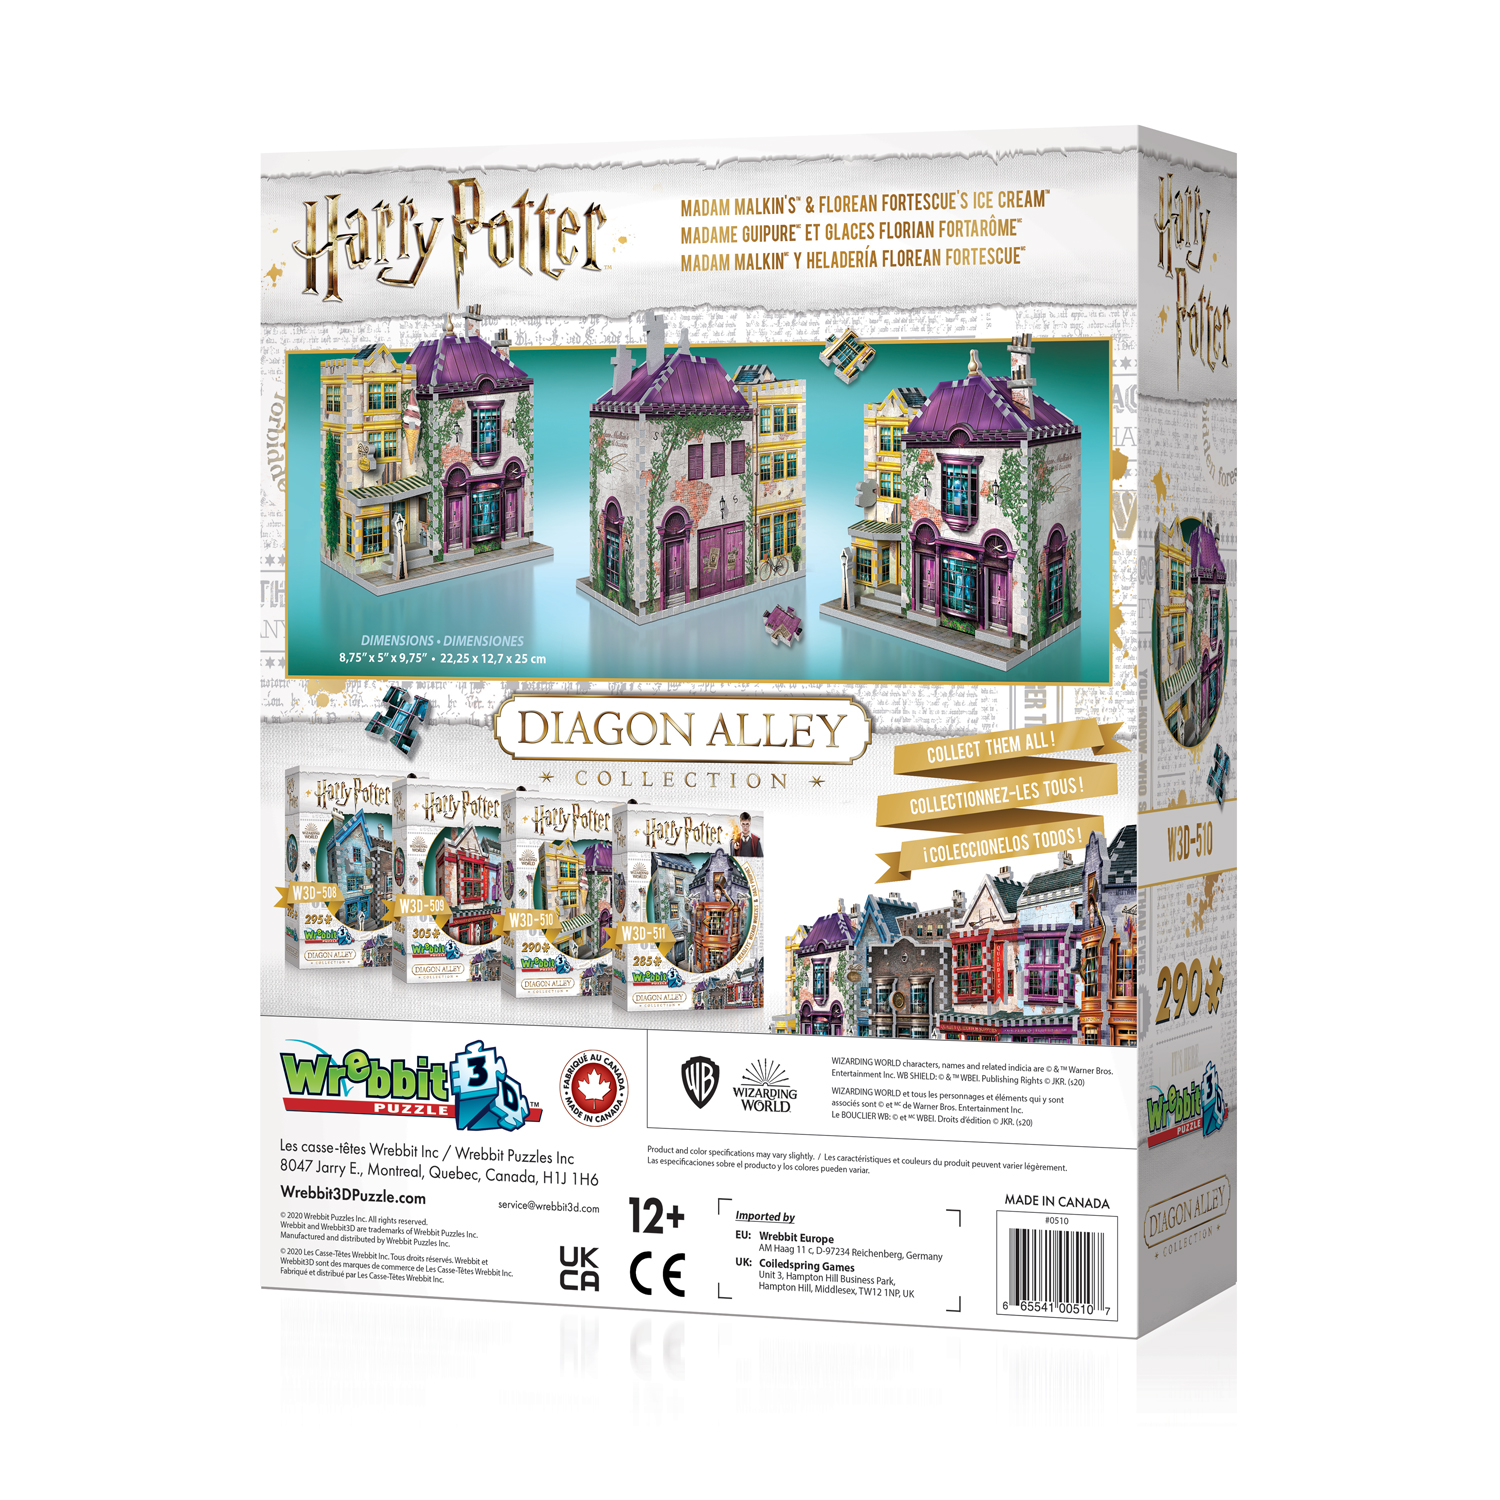 Madam Malkin'S & Florean Fortescue'S Harry Potter WREBBIT 3D PUZZLE W3D-0510 